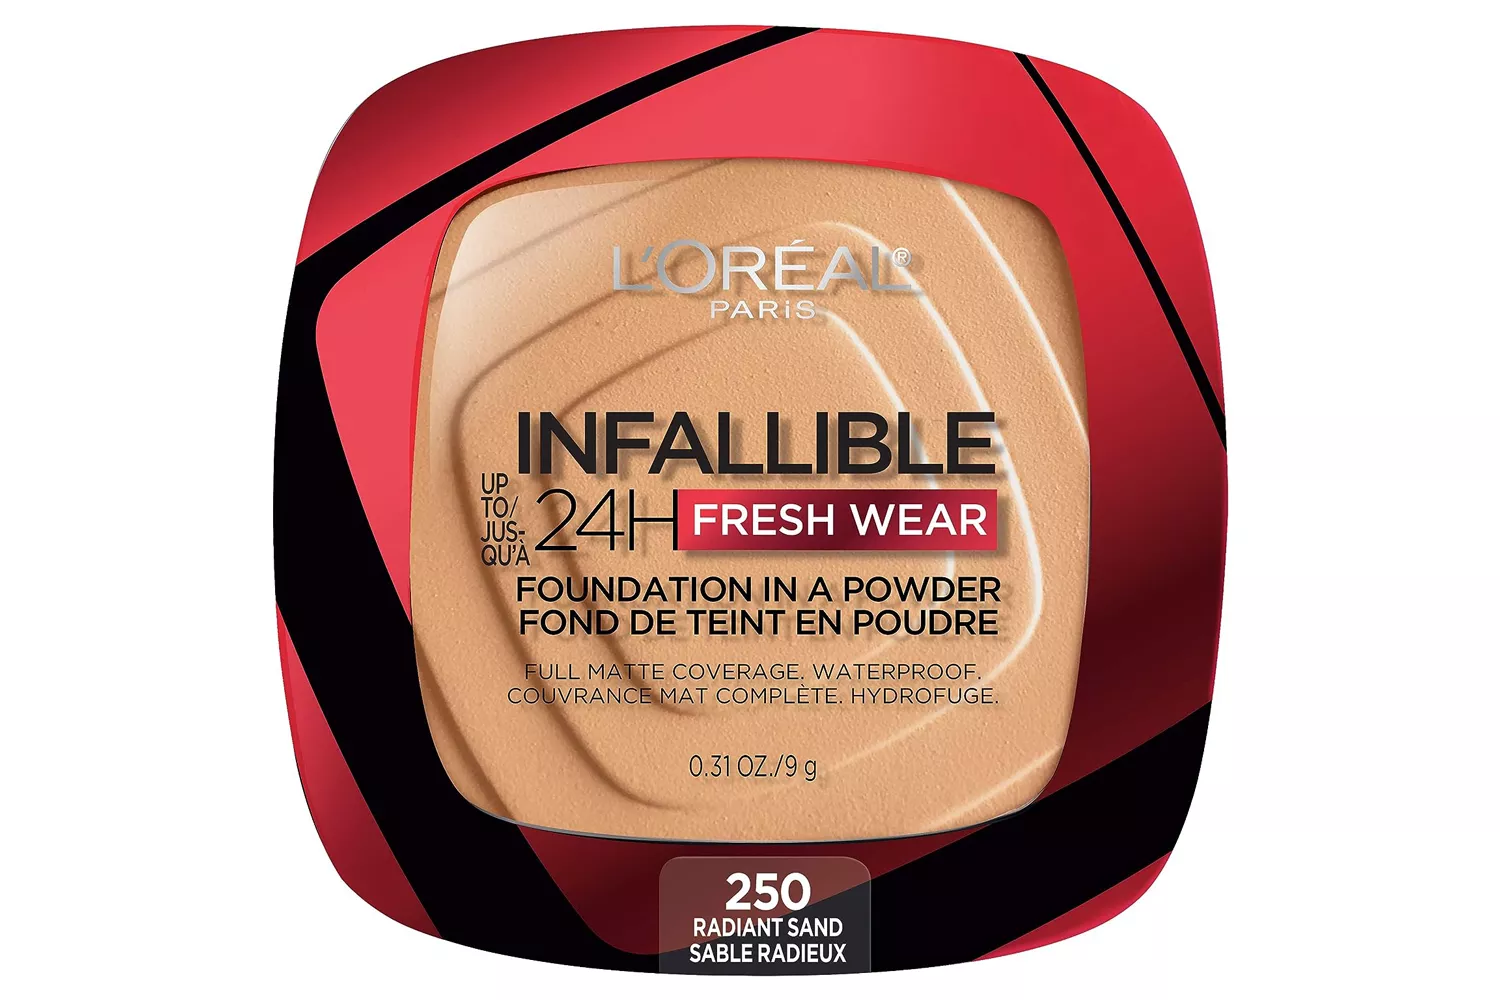 L'Oréal Infallible 24hr Fresh Wear Foundation in a Powder